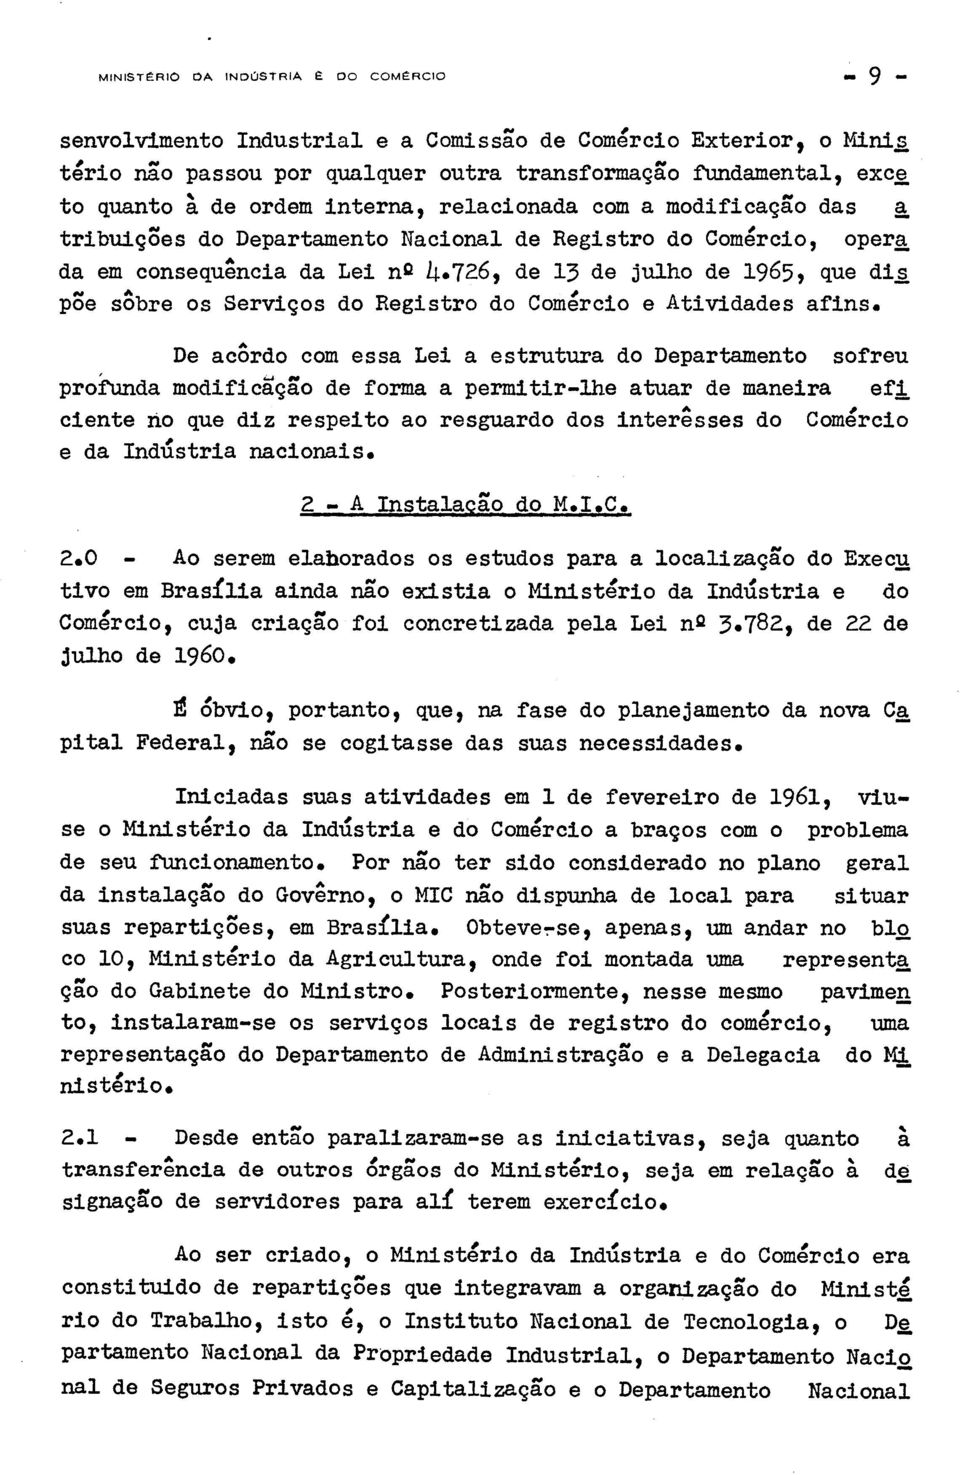 726, de 13 de julho de 1965, que dis p3e sobre os Servigos do Registro do Comercio e Atividades afins.